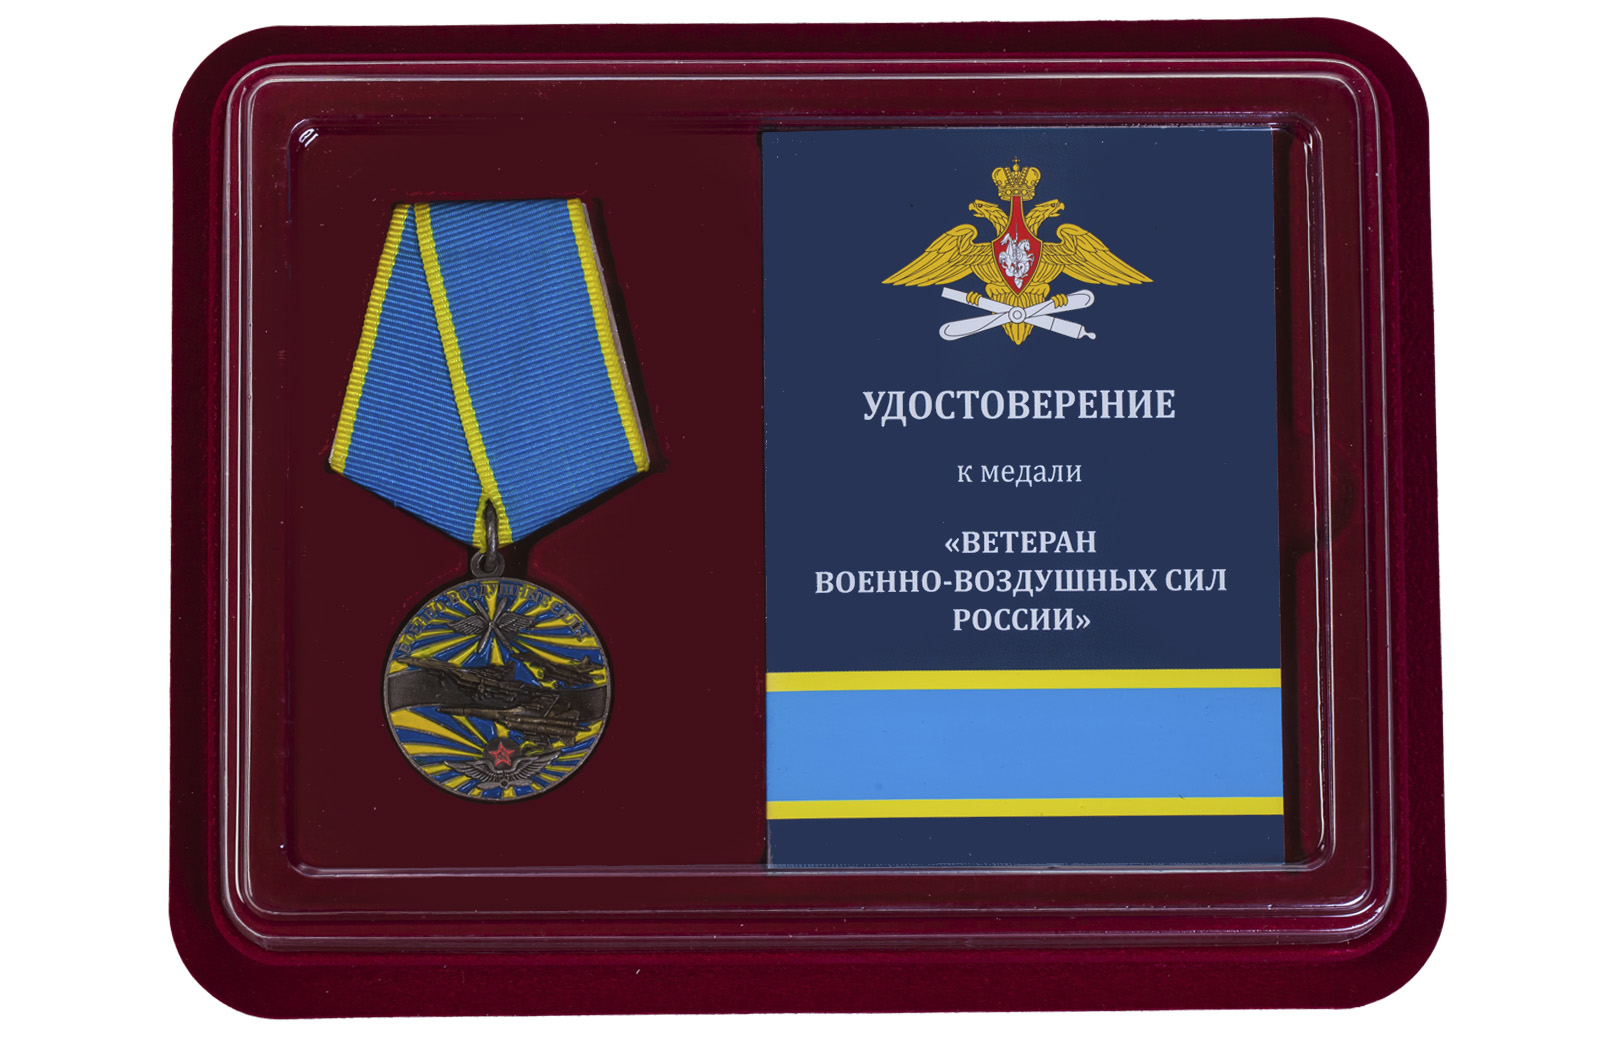 Купить медаль "Ветеран ВВС" в футляре с удостоверением по лучшей цене